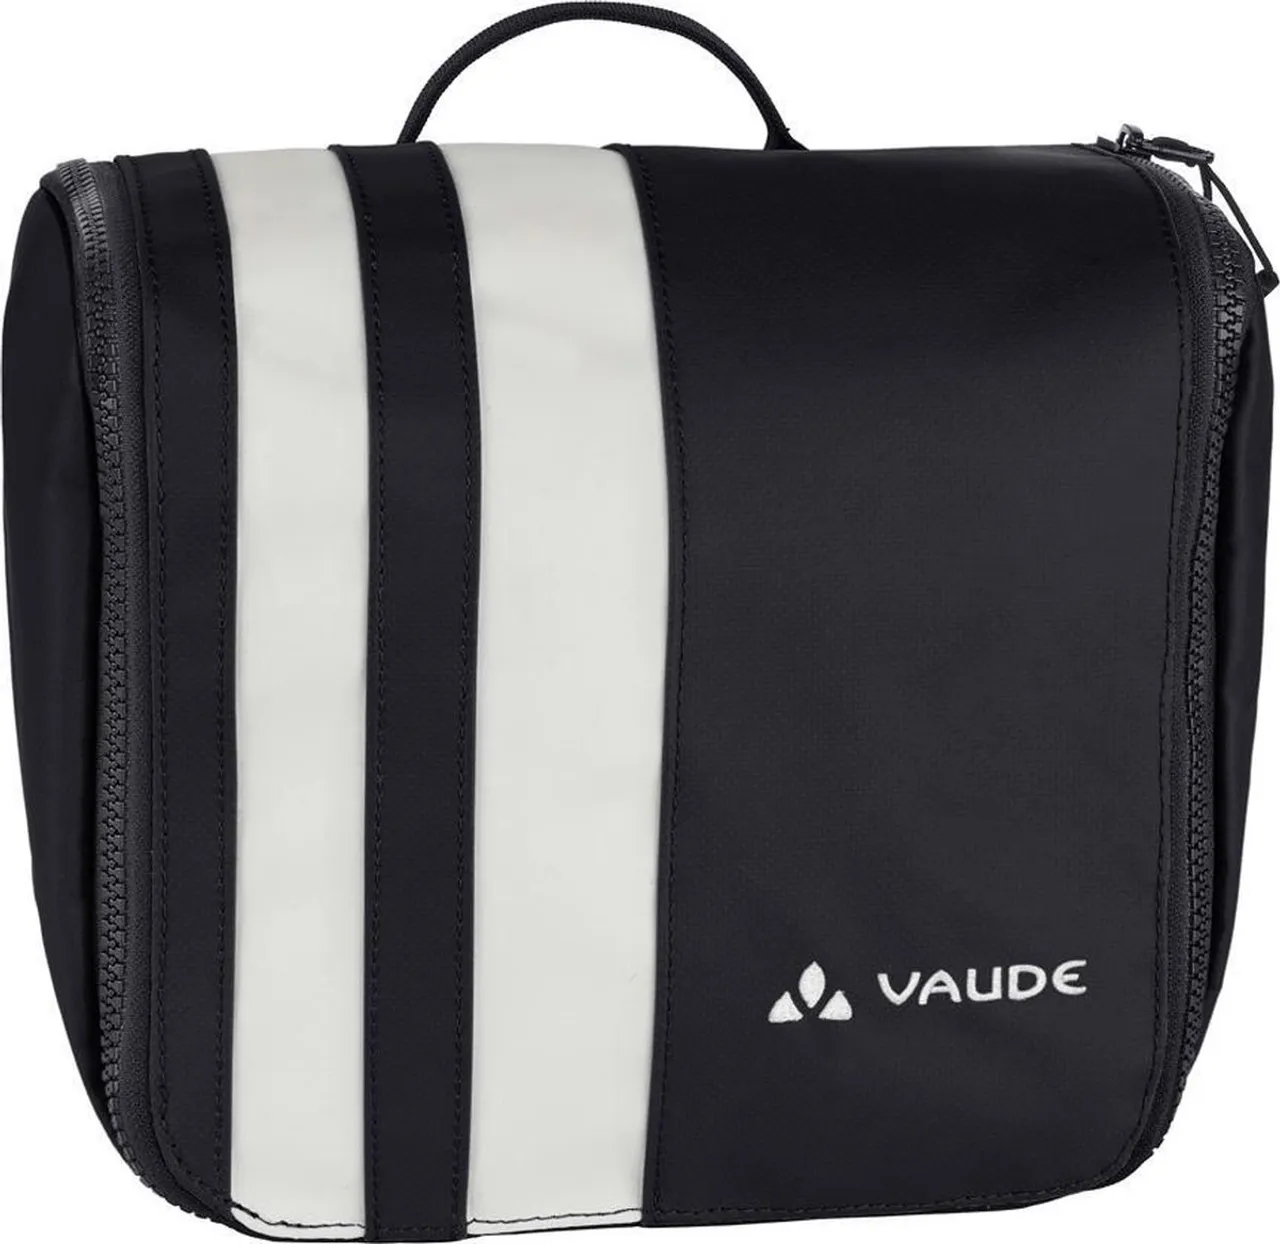 VAUDE - Benno - Black - Backpack Accessoires -